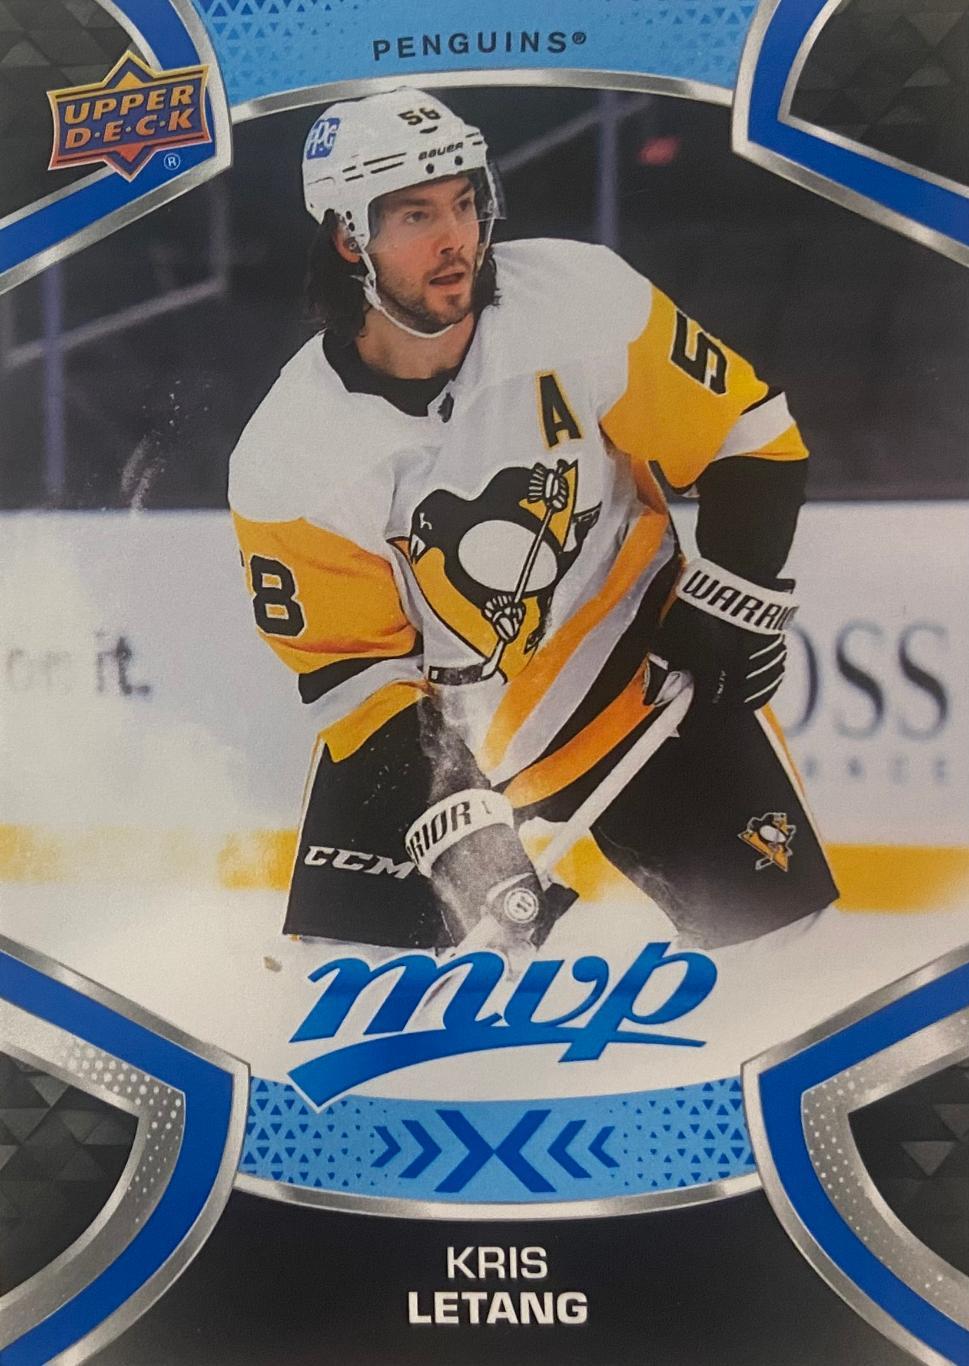 Хоккей. Карточка Kris Letang-Крис Летанг Pittsburgh Penguins - Питтсбург НХЛ/NHL